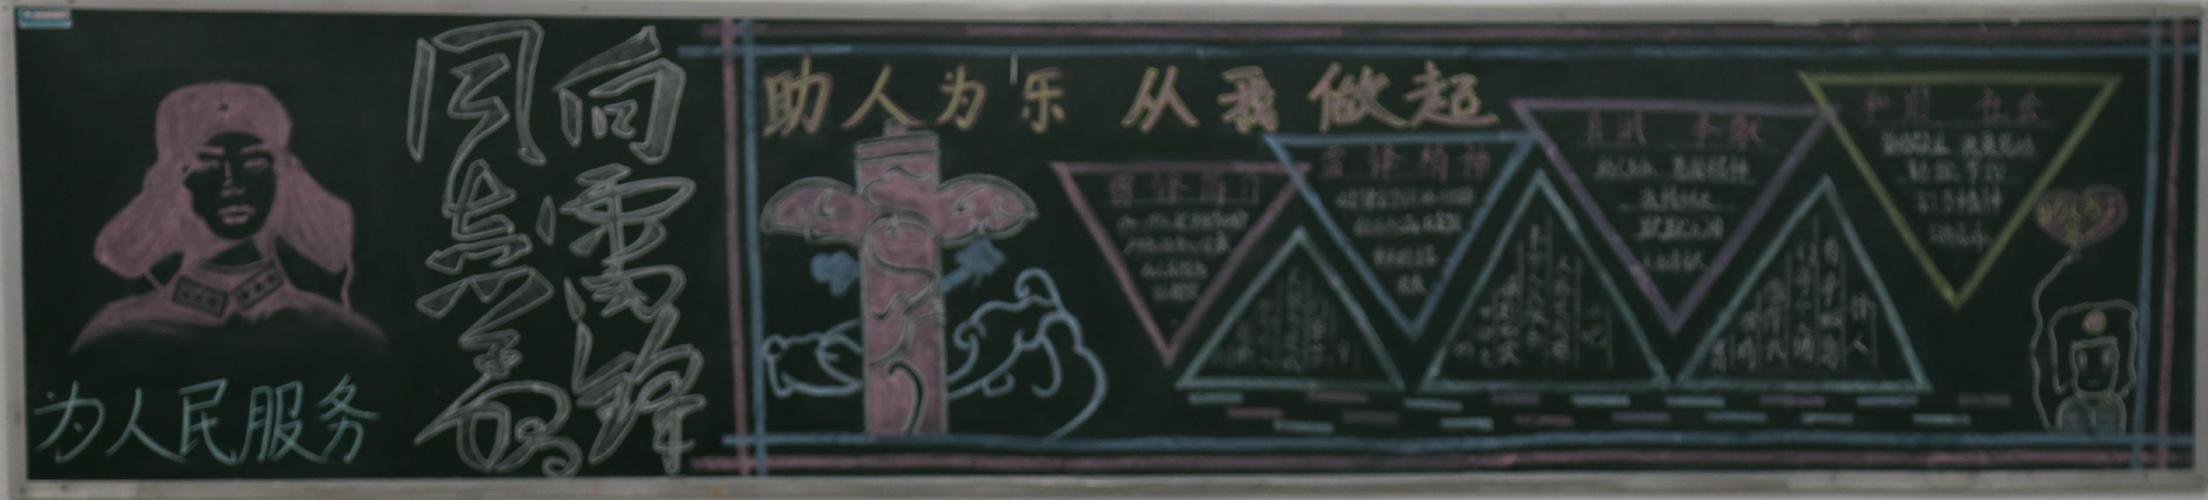 中文系开展学雷锋树新风黑板报评比活动